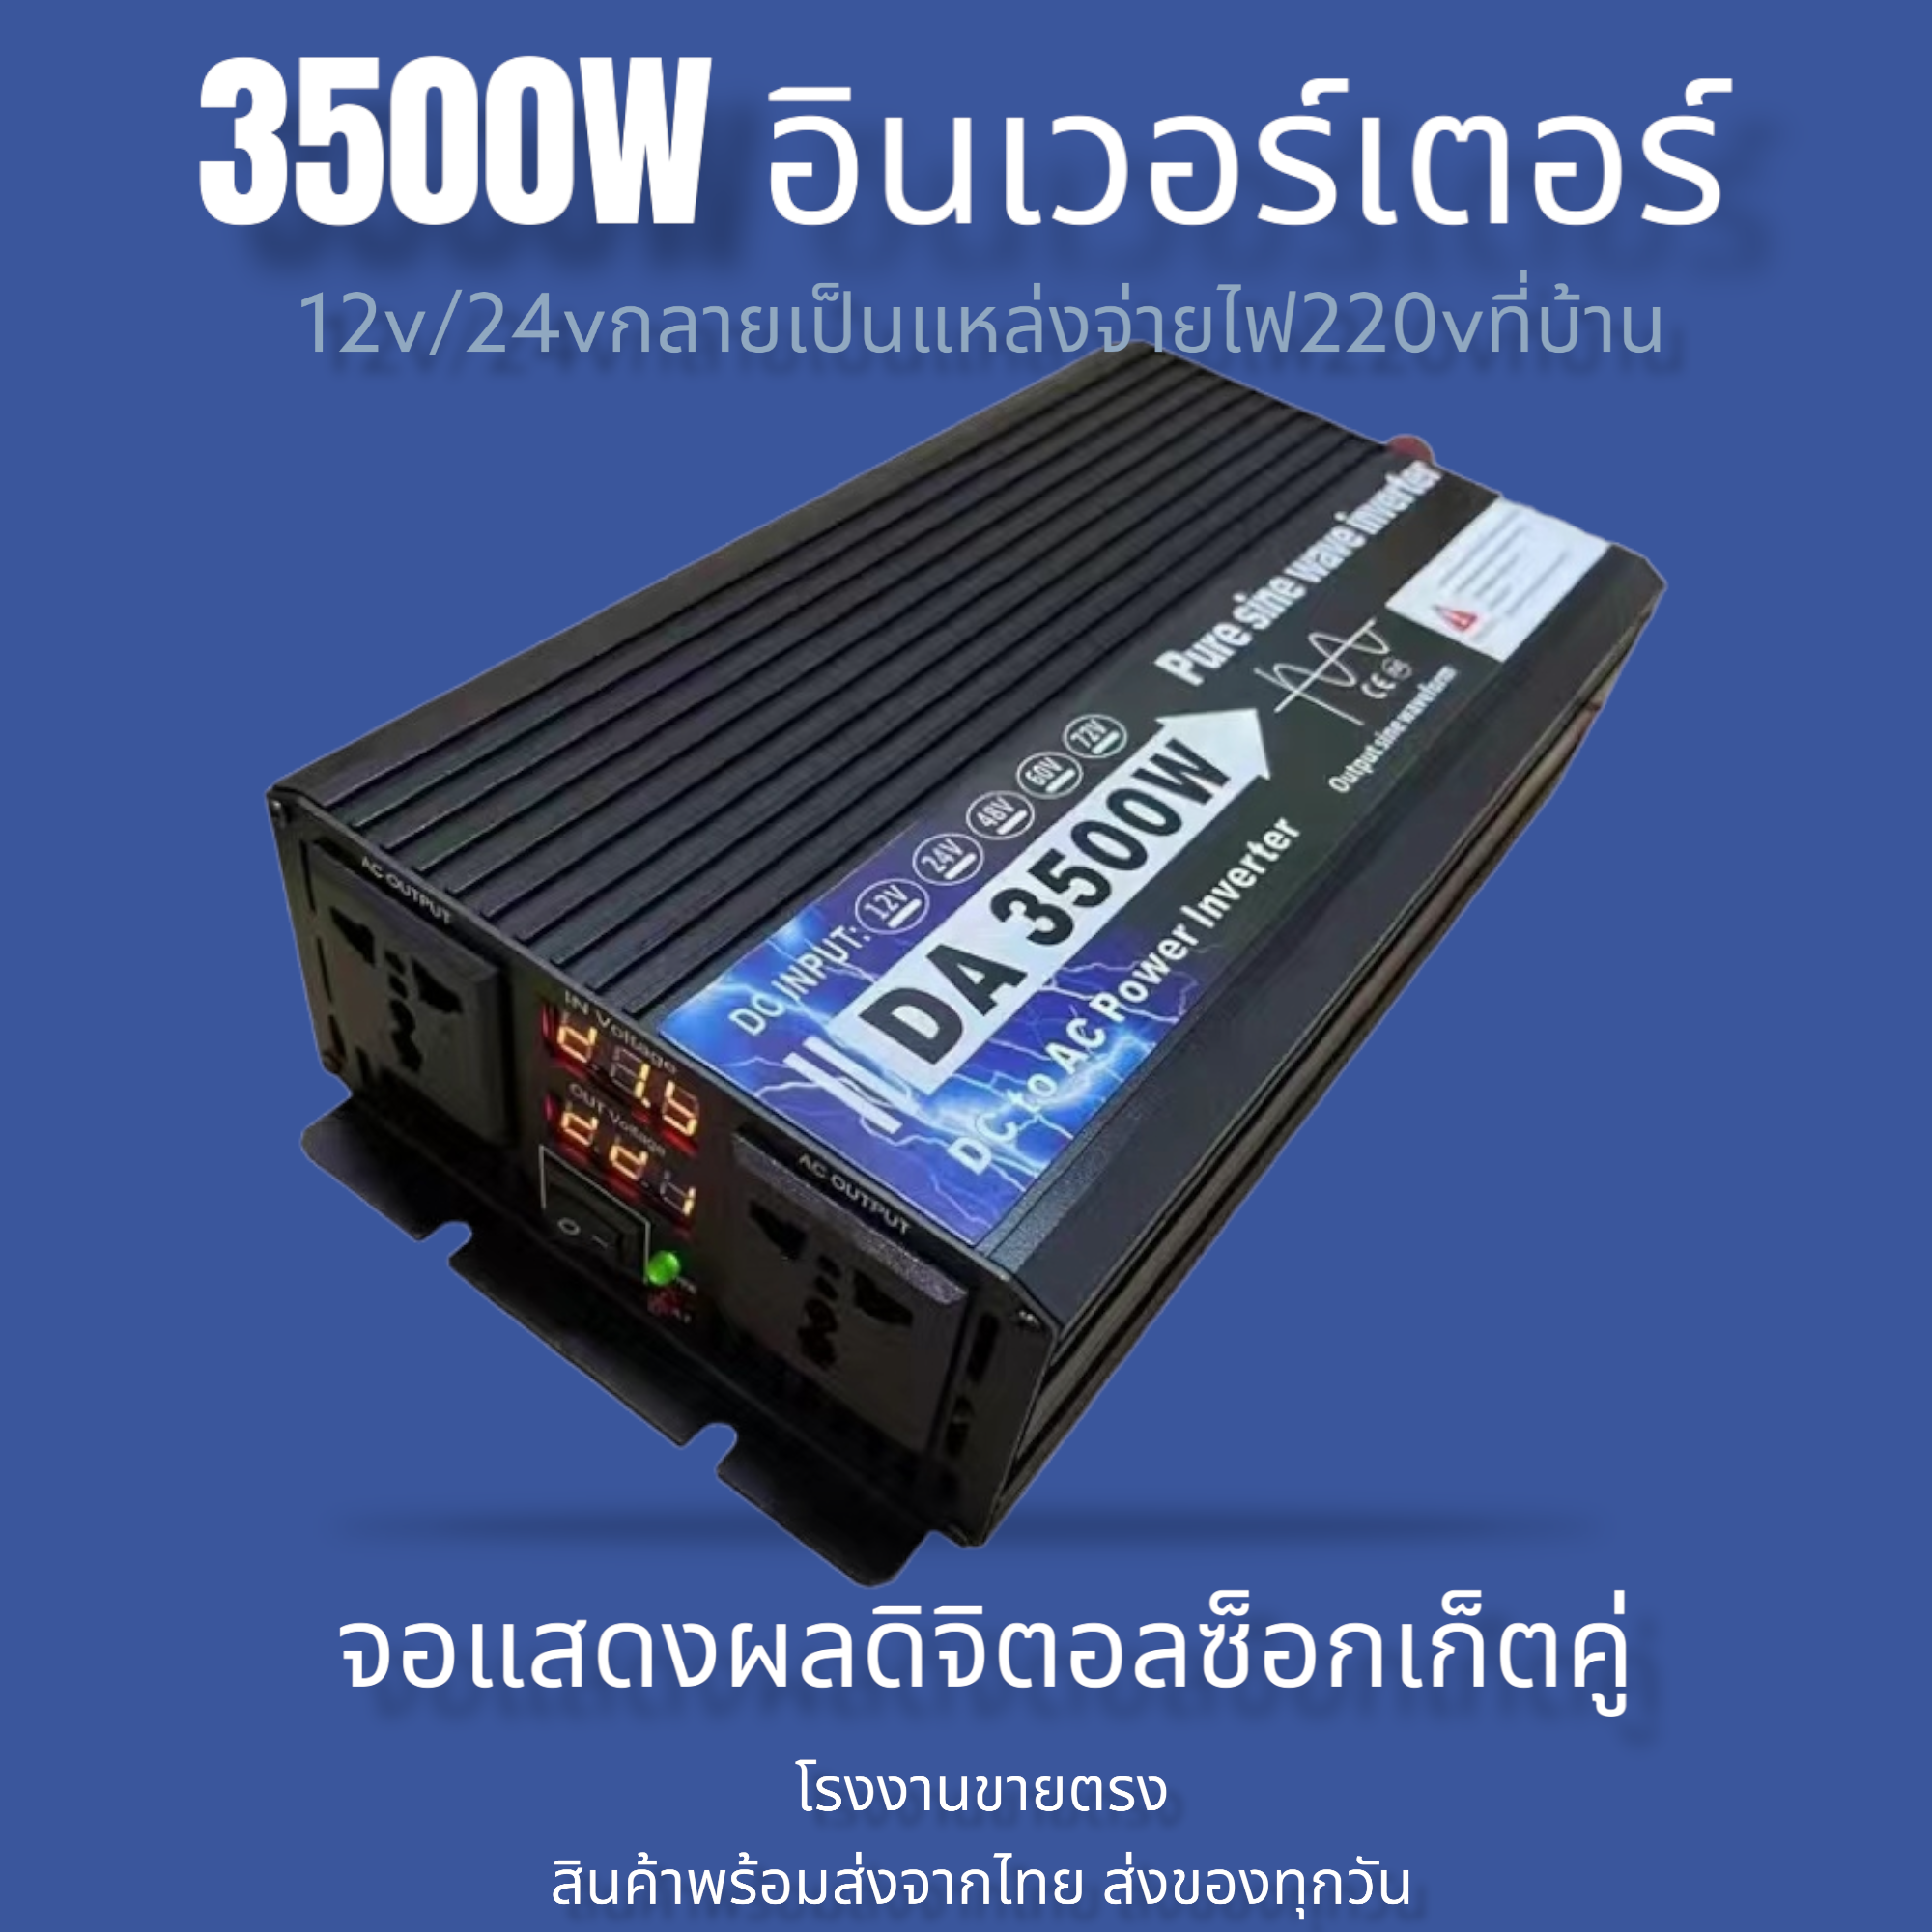 มุมมองเพิ่มเติมของสินค้า อินเวอร์เตอร์ 3500w/3000w รุ่น12v/24v to 220v ตัวแปลงไฟDC เป็น AC ตัวแปลงไฟรถ เพรียวซายเวฟของอินเวอร์เตอร์ pure sine wave inverter โรงงานขายตรง พร้อมส่งจากไทย